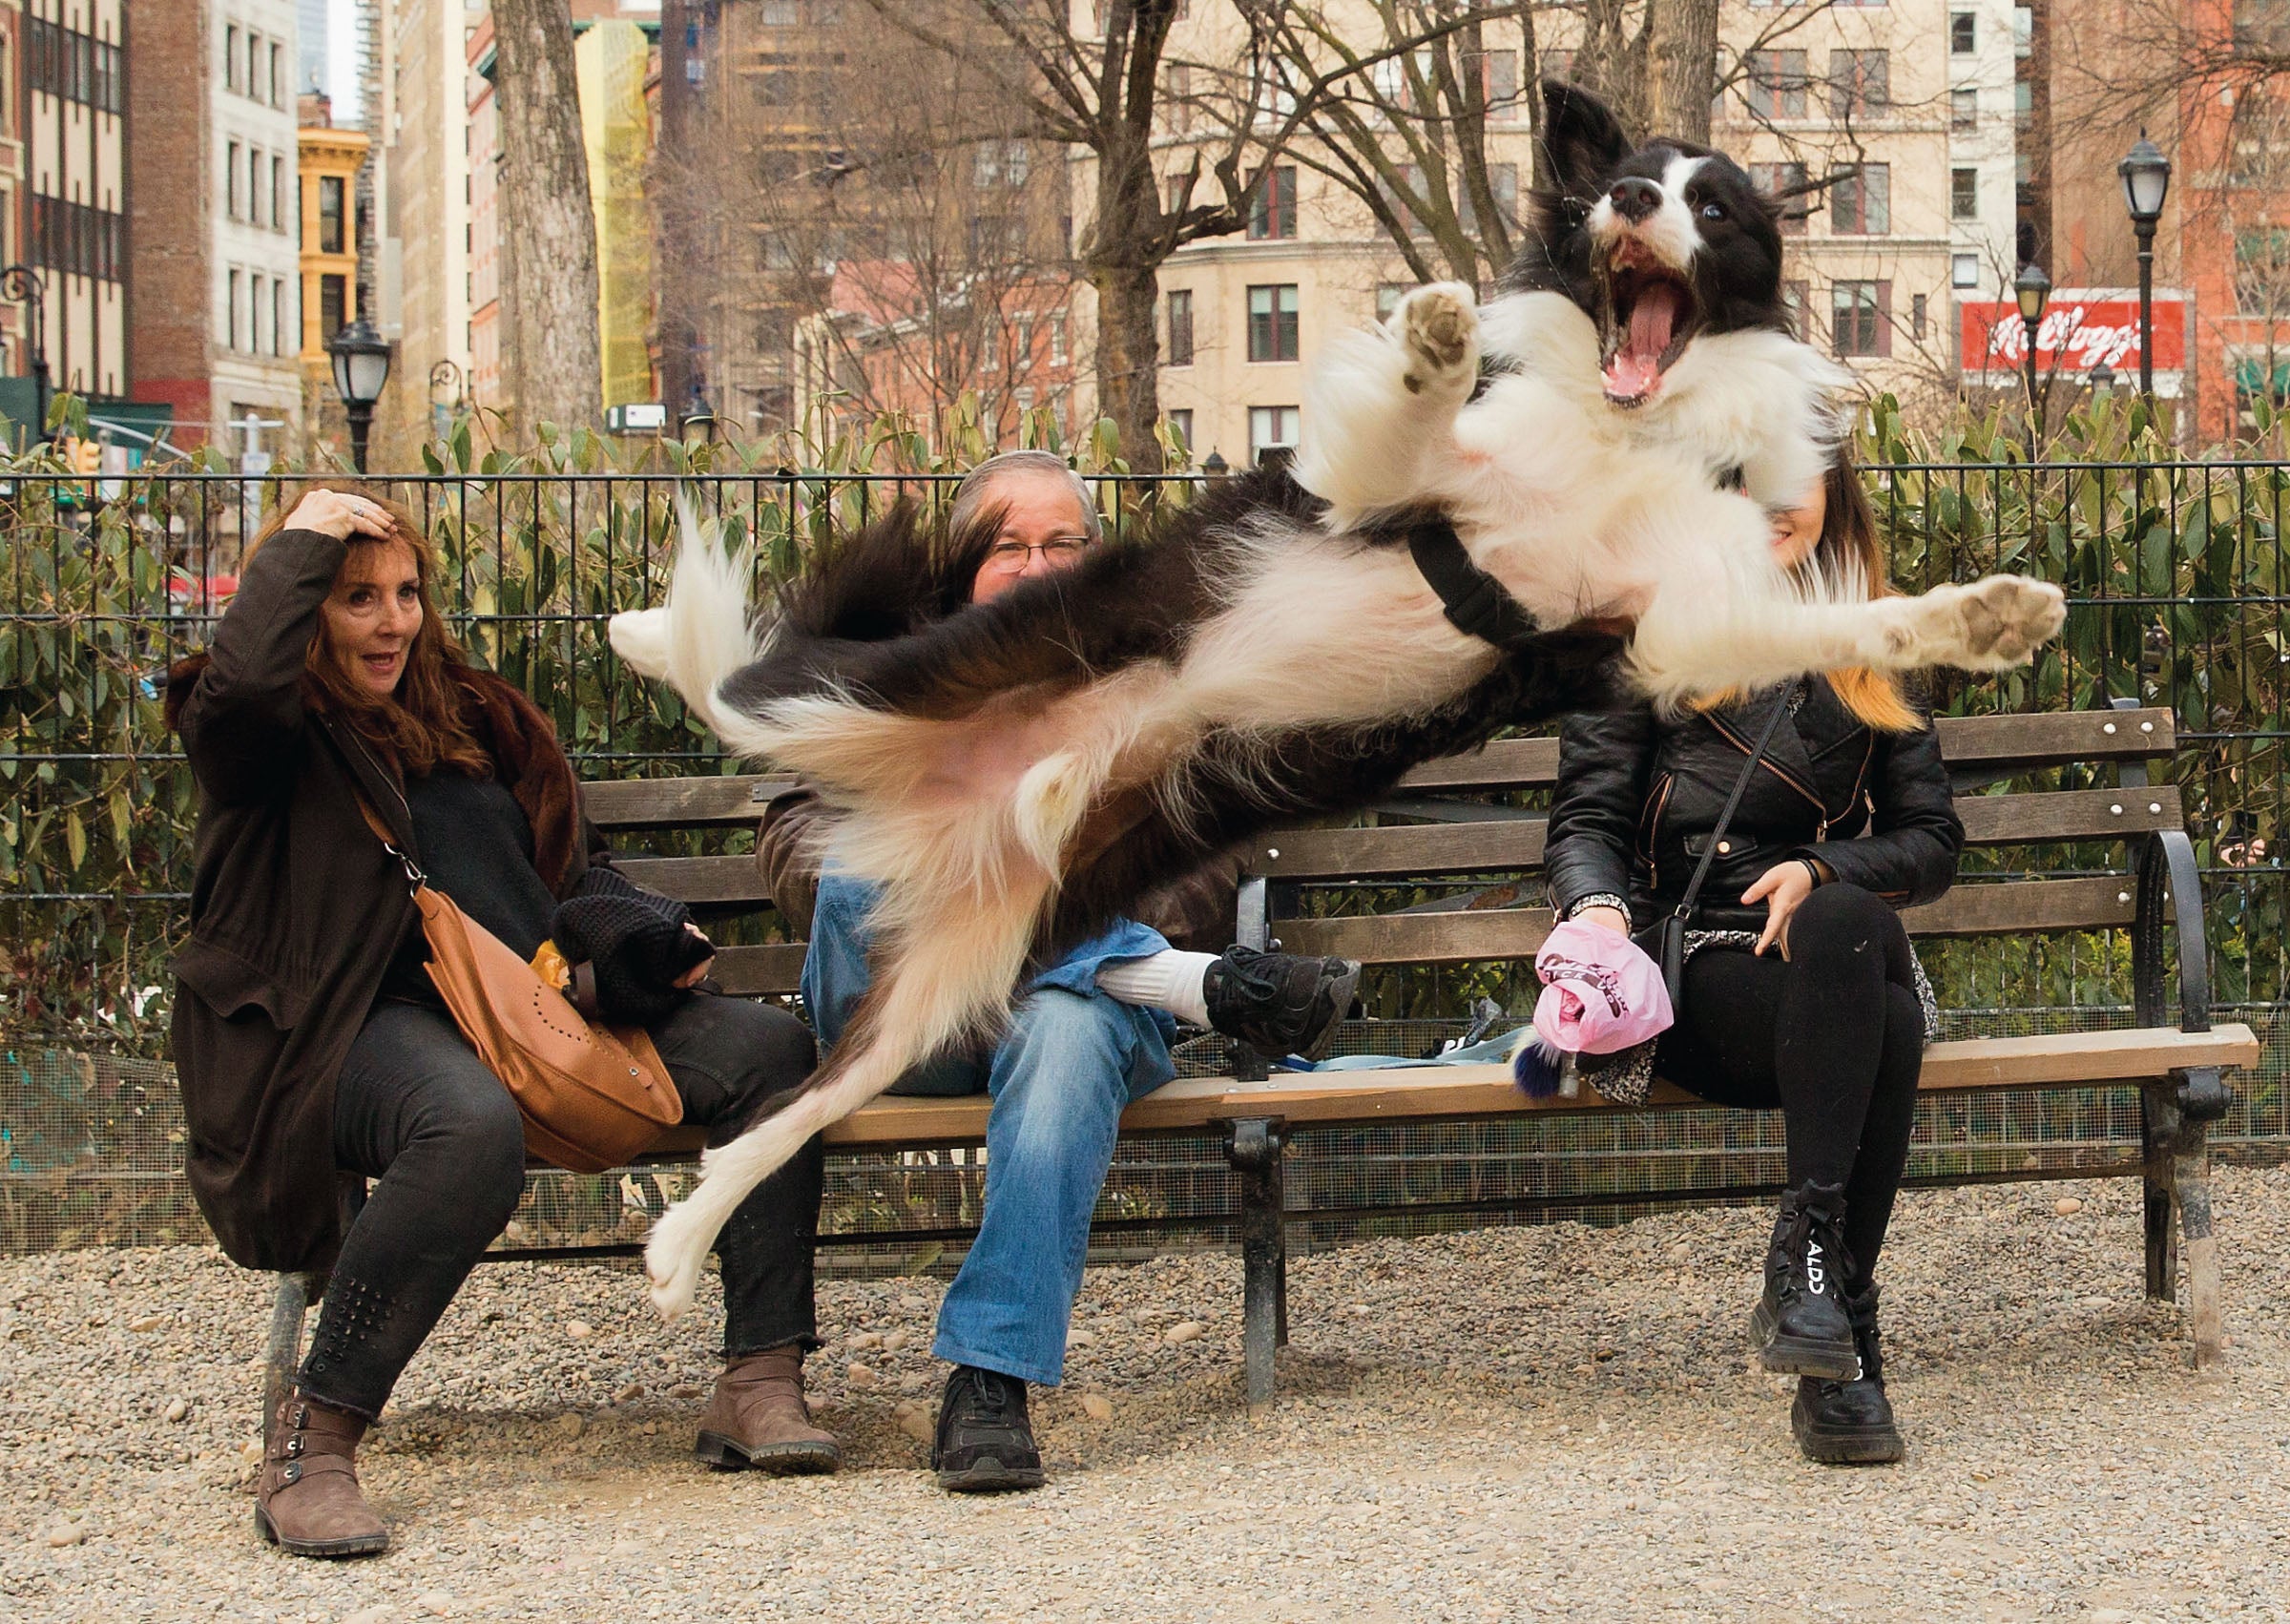 כלב מזנק מול אנשים שיושבים על ספסל בפארק.